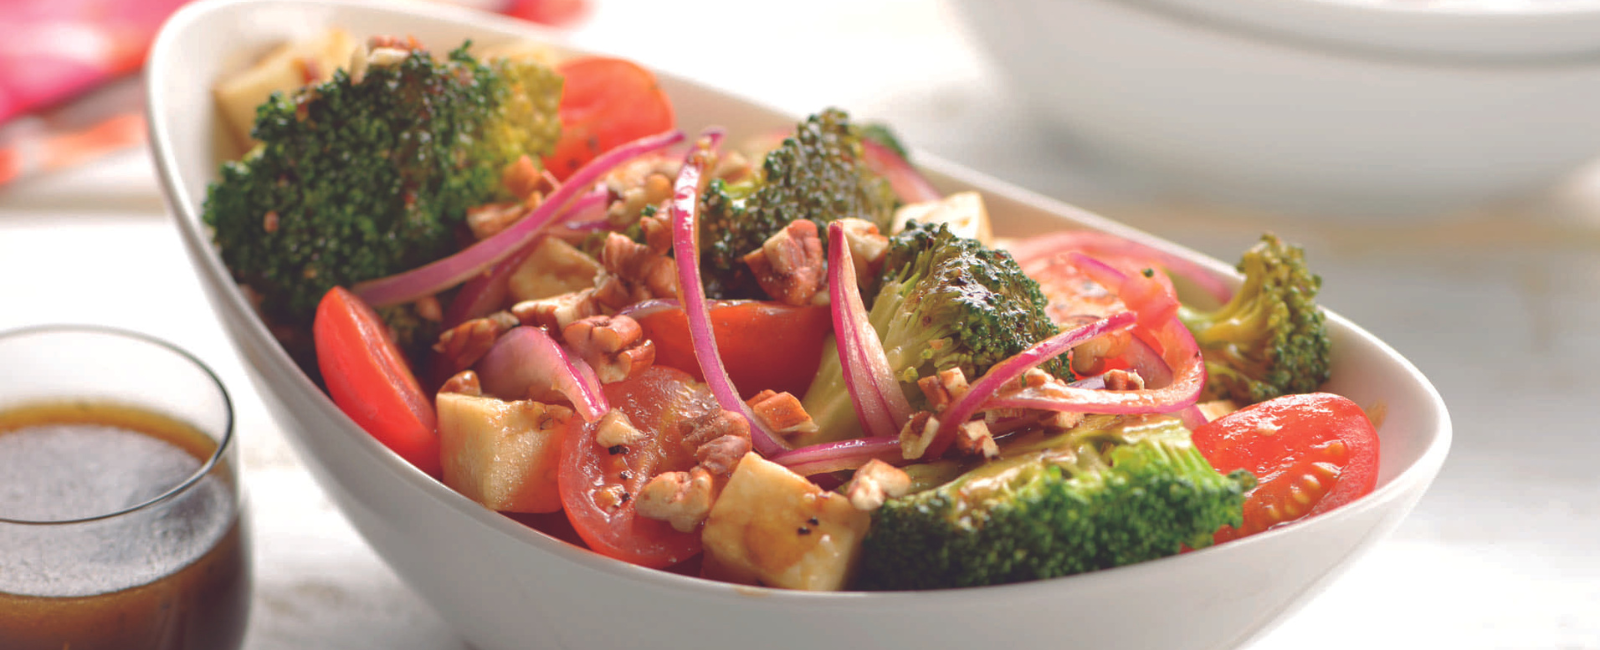 Broccoli and Tomato Salad with Balsamic Vinaigrette